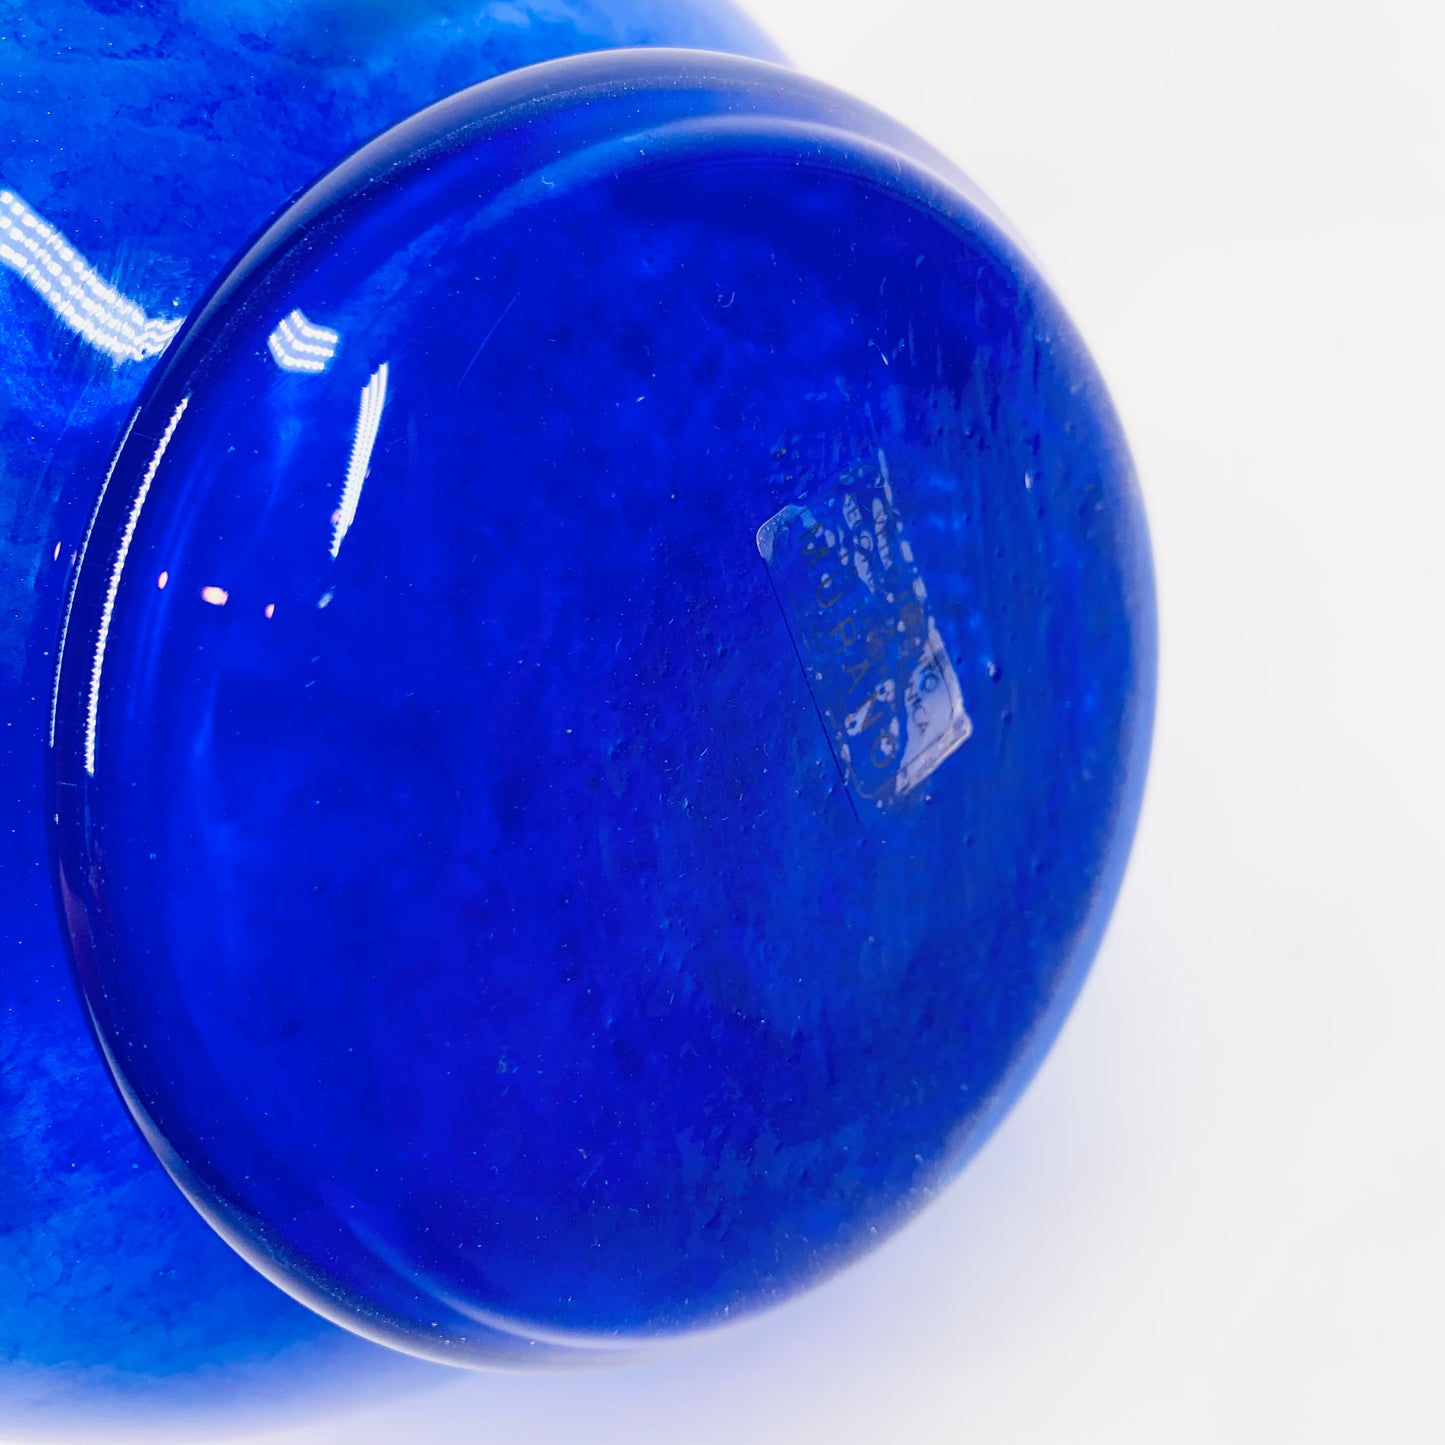 1980s hand made Murano blue art glass vase with millefiori and ruffle rim